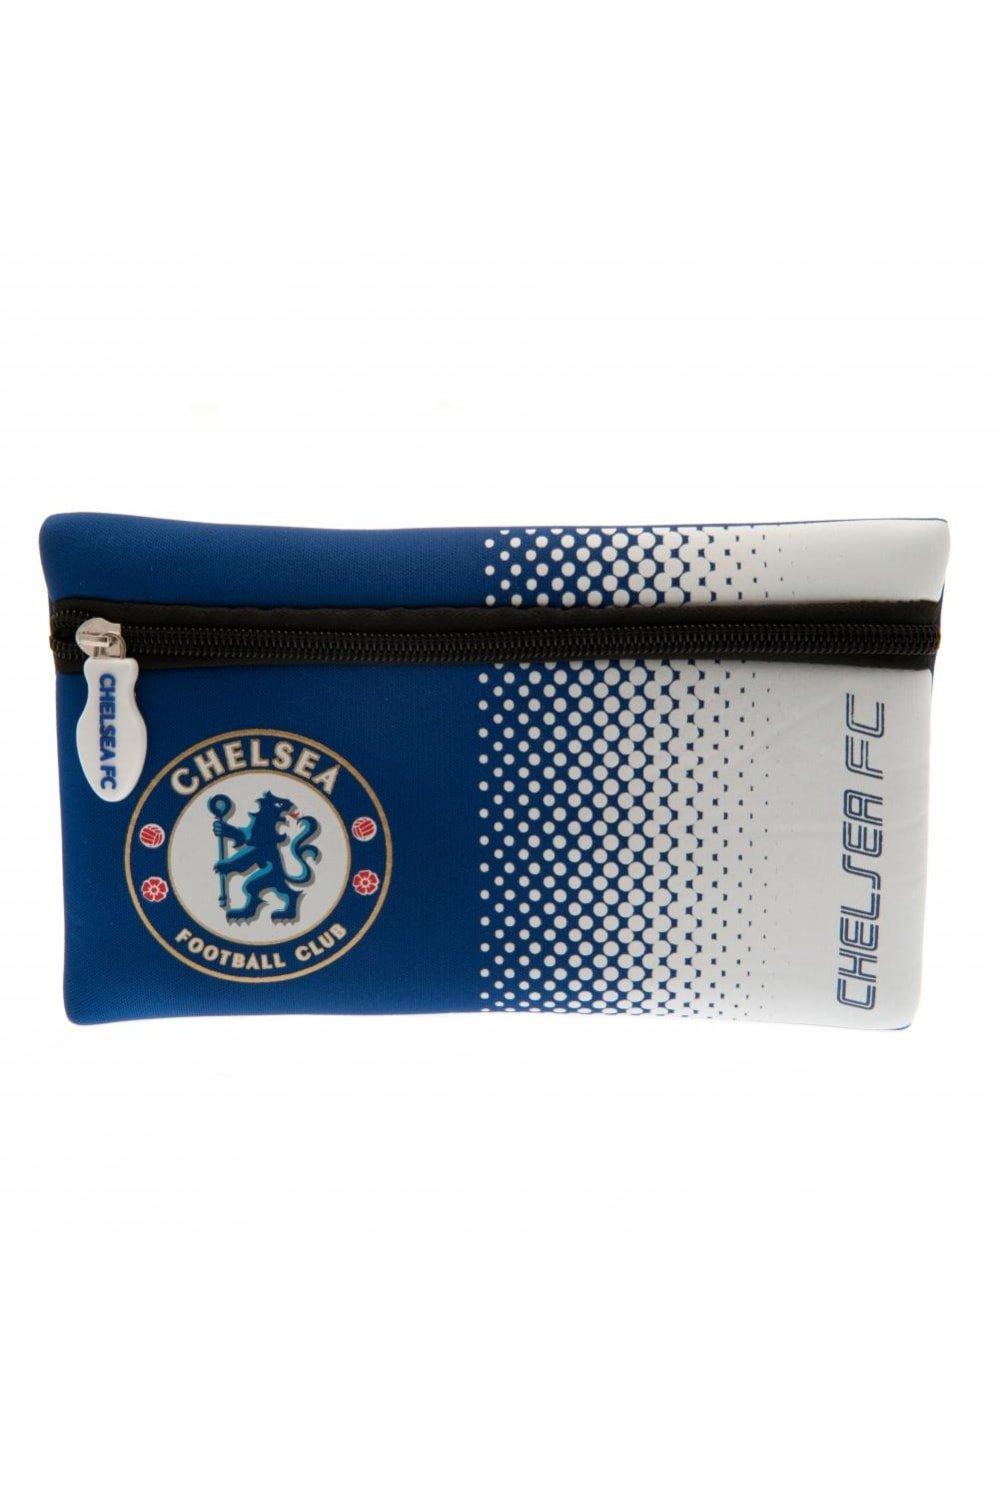 Пенал Chelsea FC, синий фото